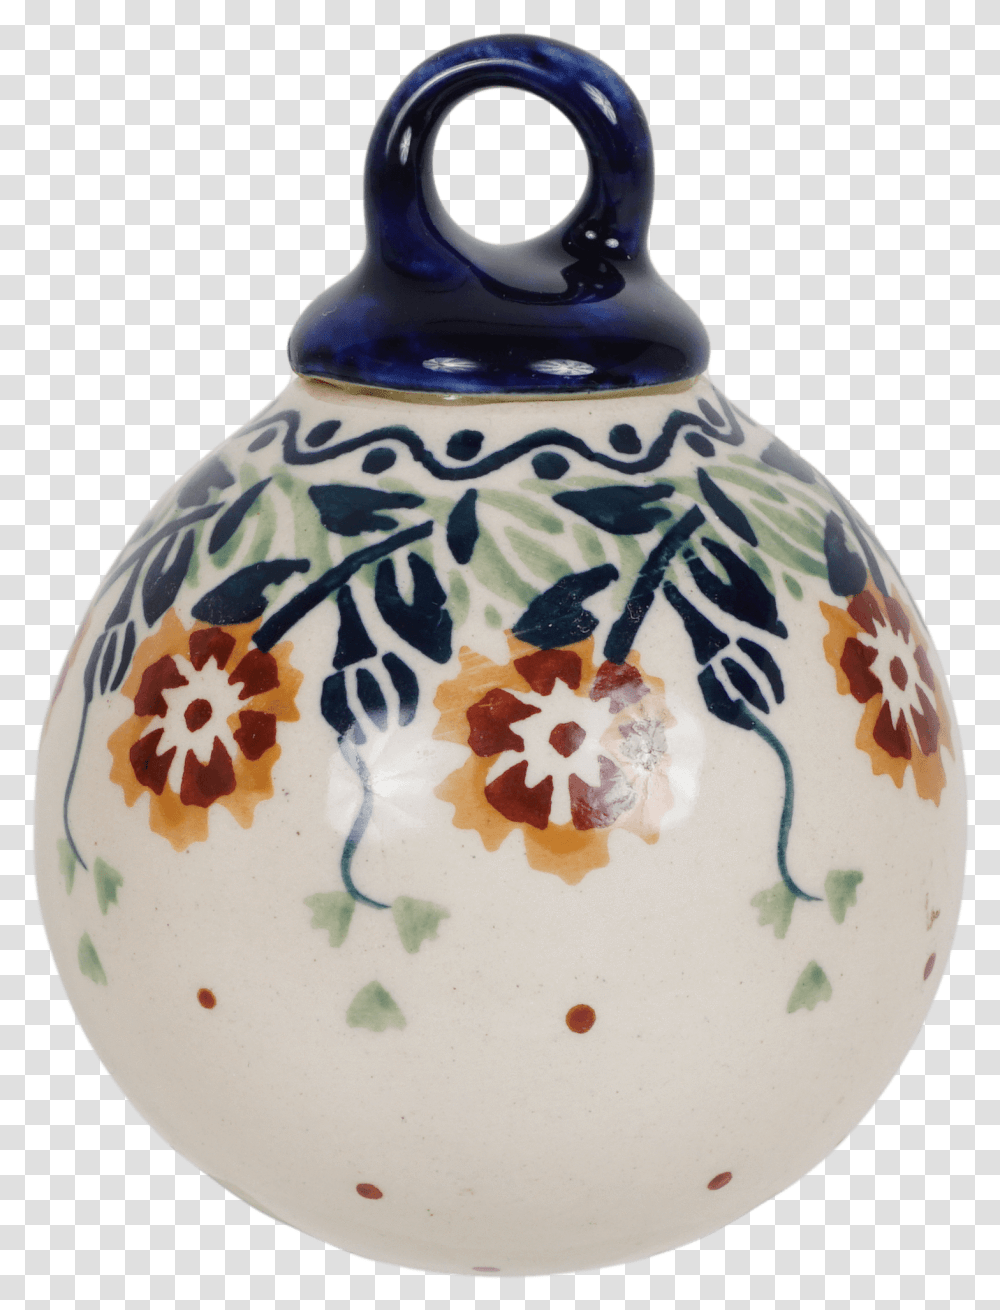 Ceramic, Porcelain, Pottery, Snowman Transparent Png